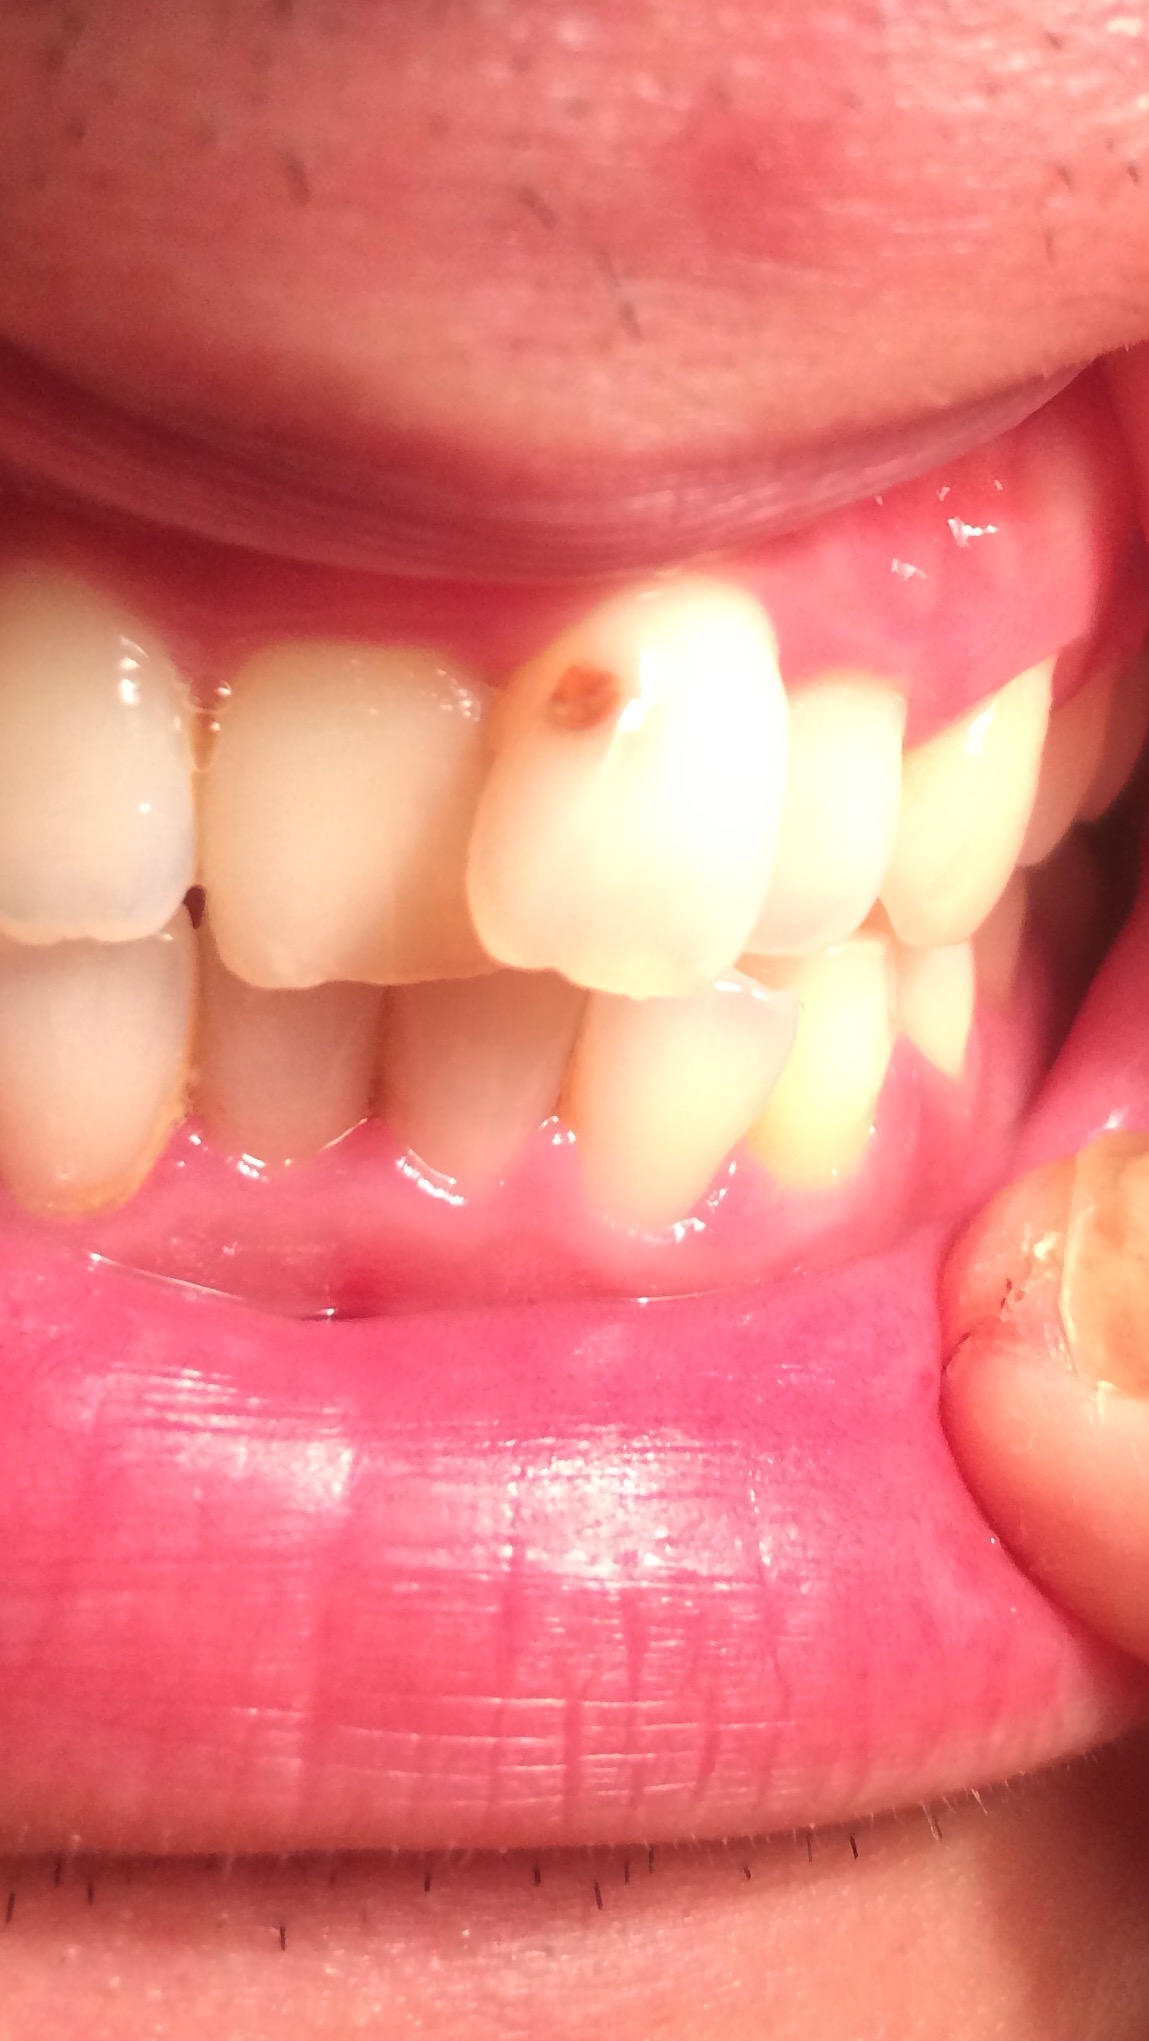 写真あり 前歯に茶色の傷のような穴 虫歯ですか 第三者より 歯チャンネル歯科相談室